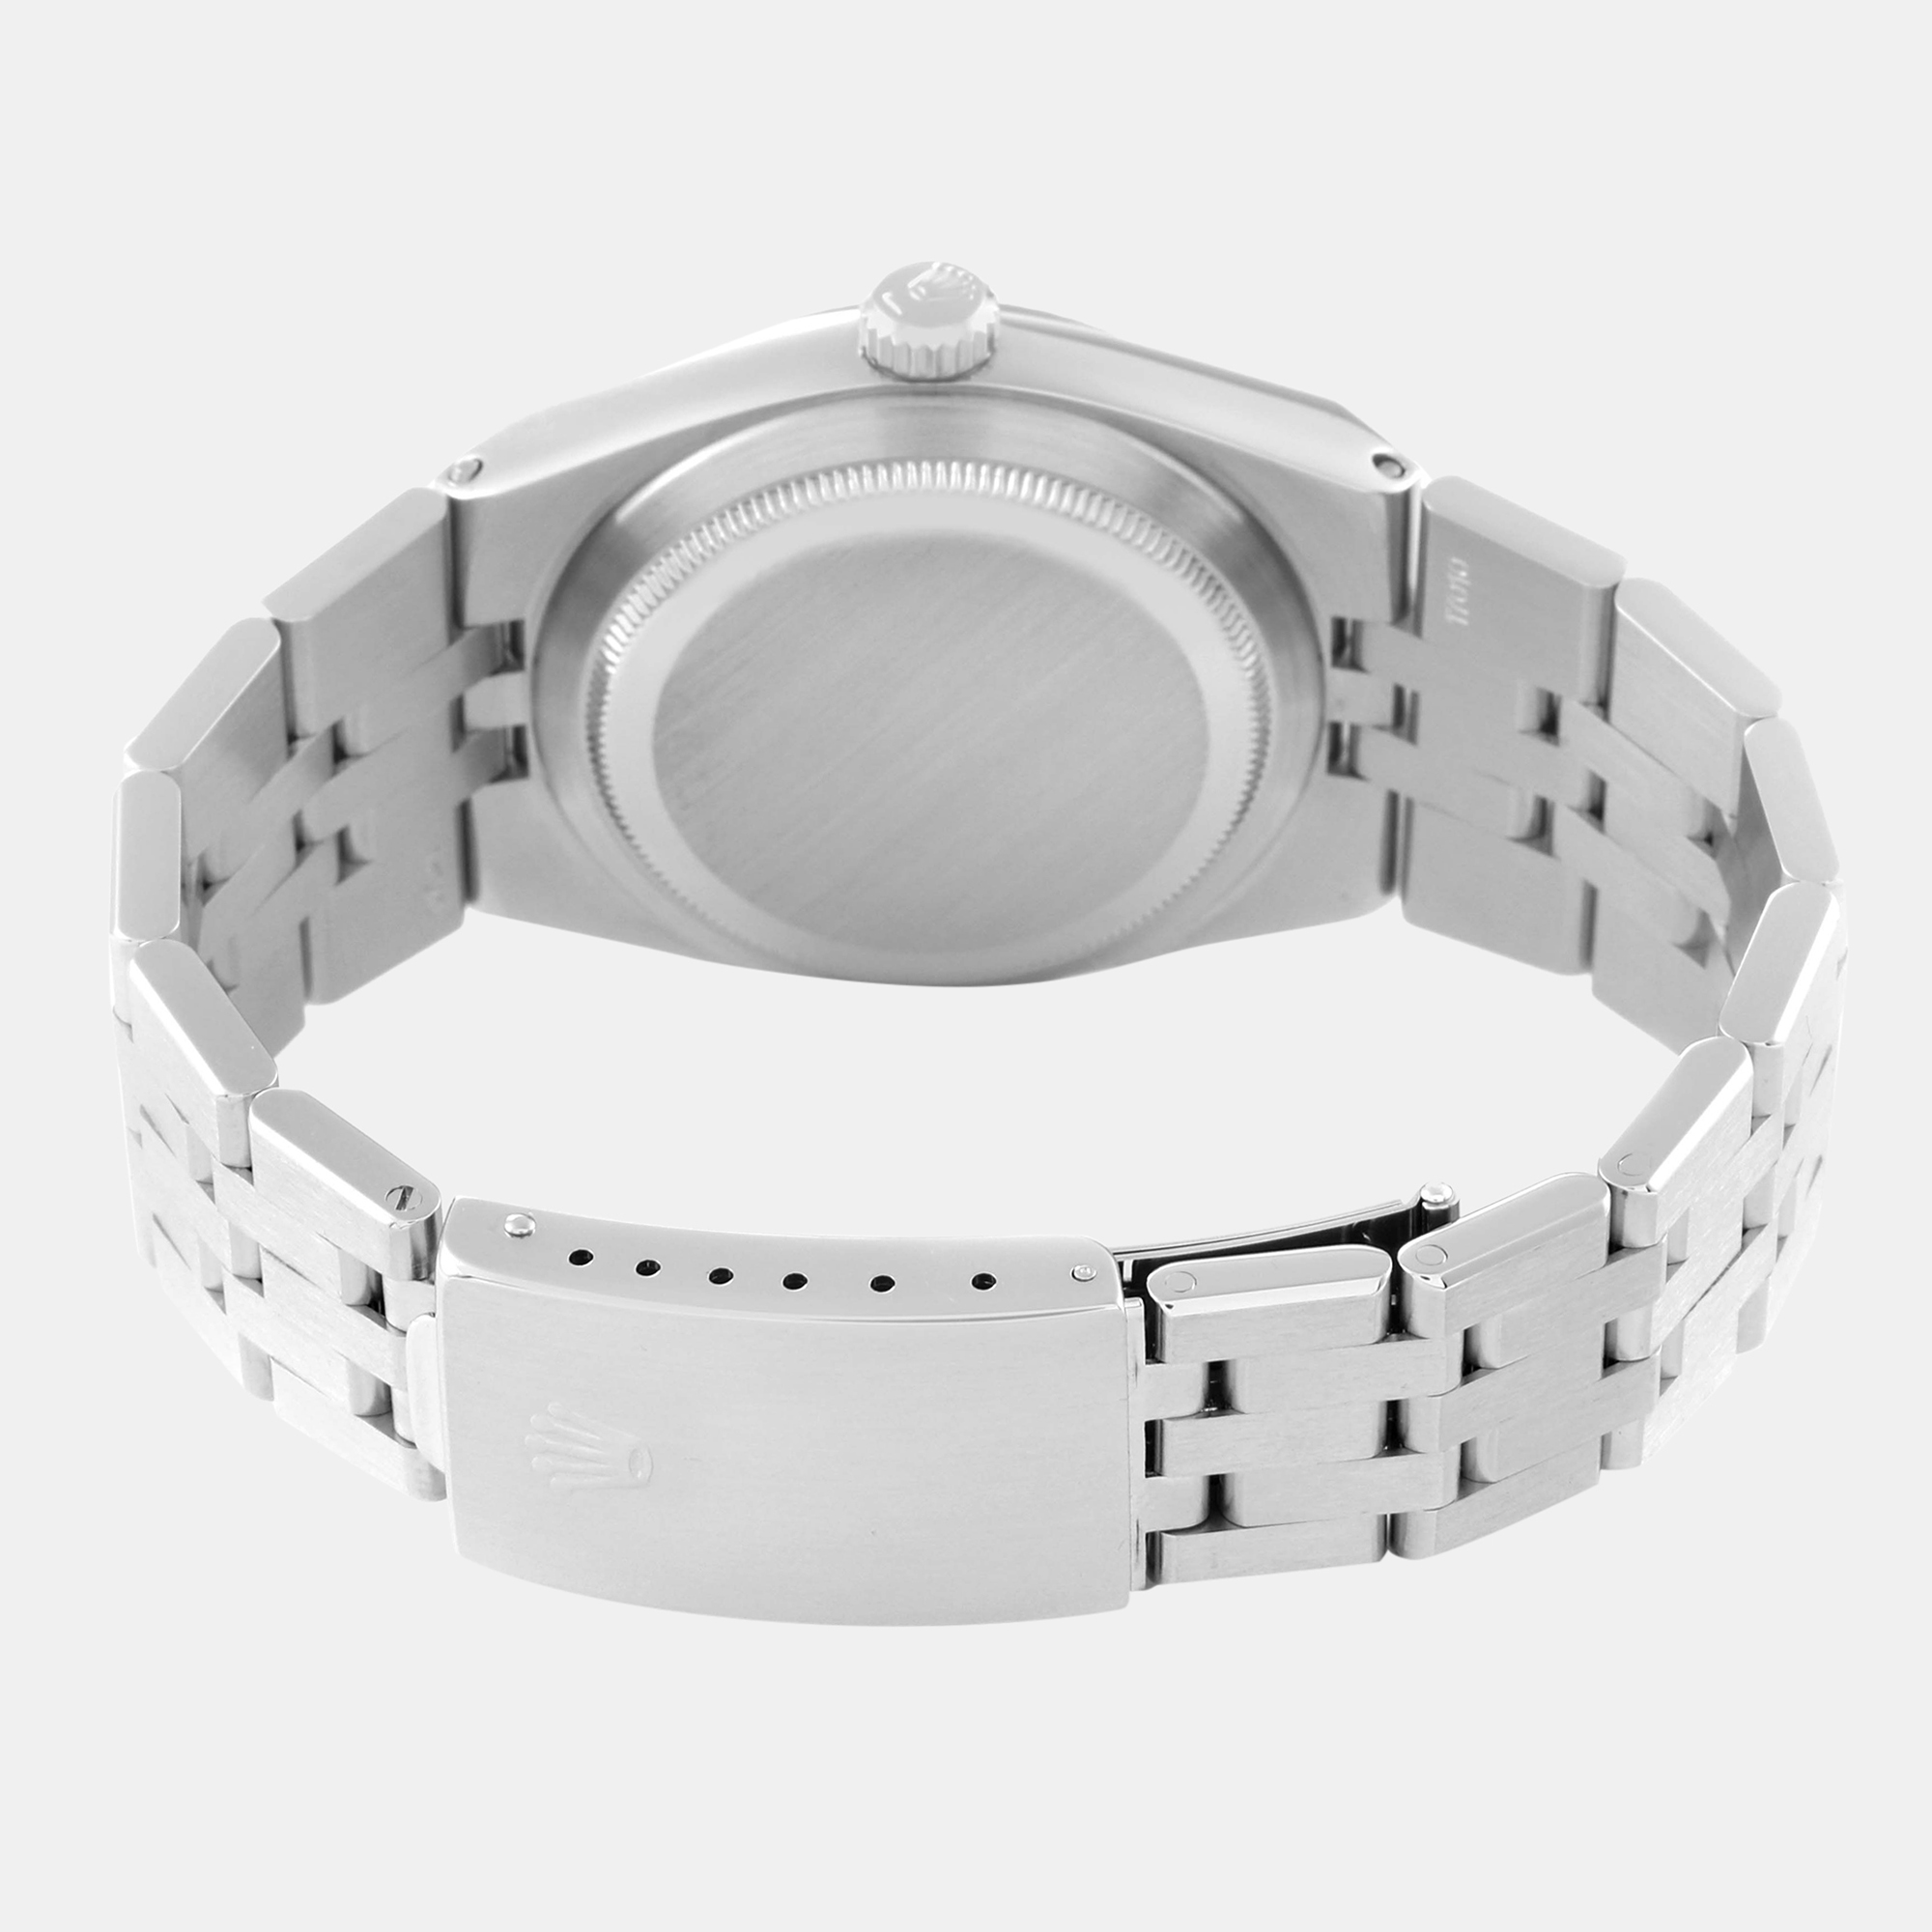 Rolex Oysterquartz Datejust Steel White Gold Men's Watch 17014 36 Mm